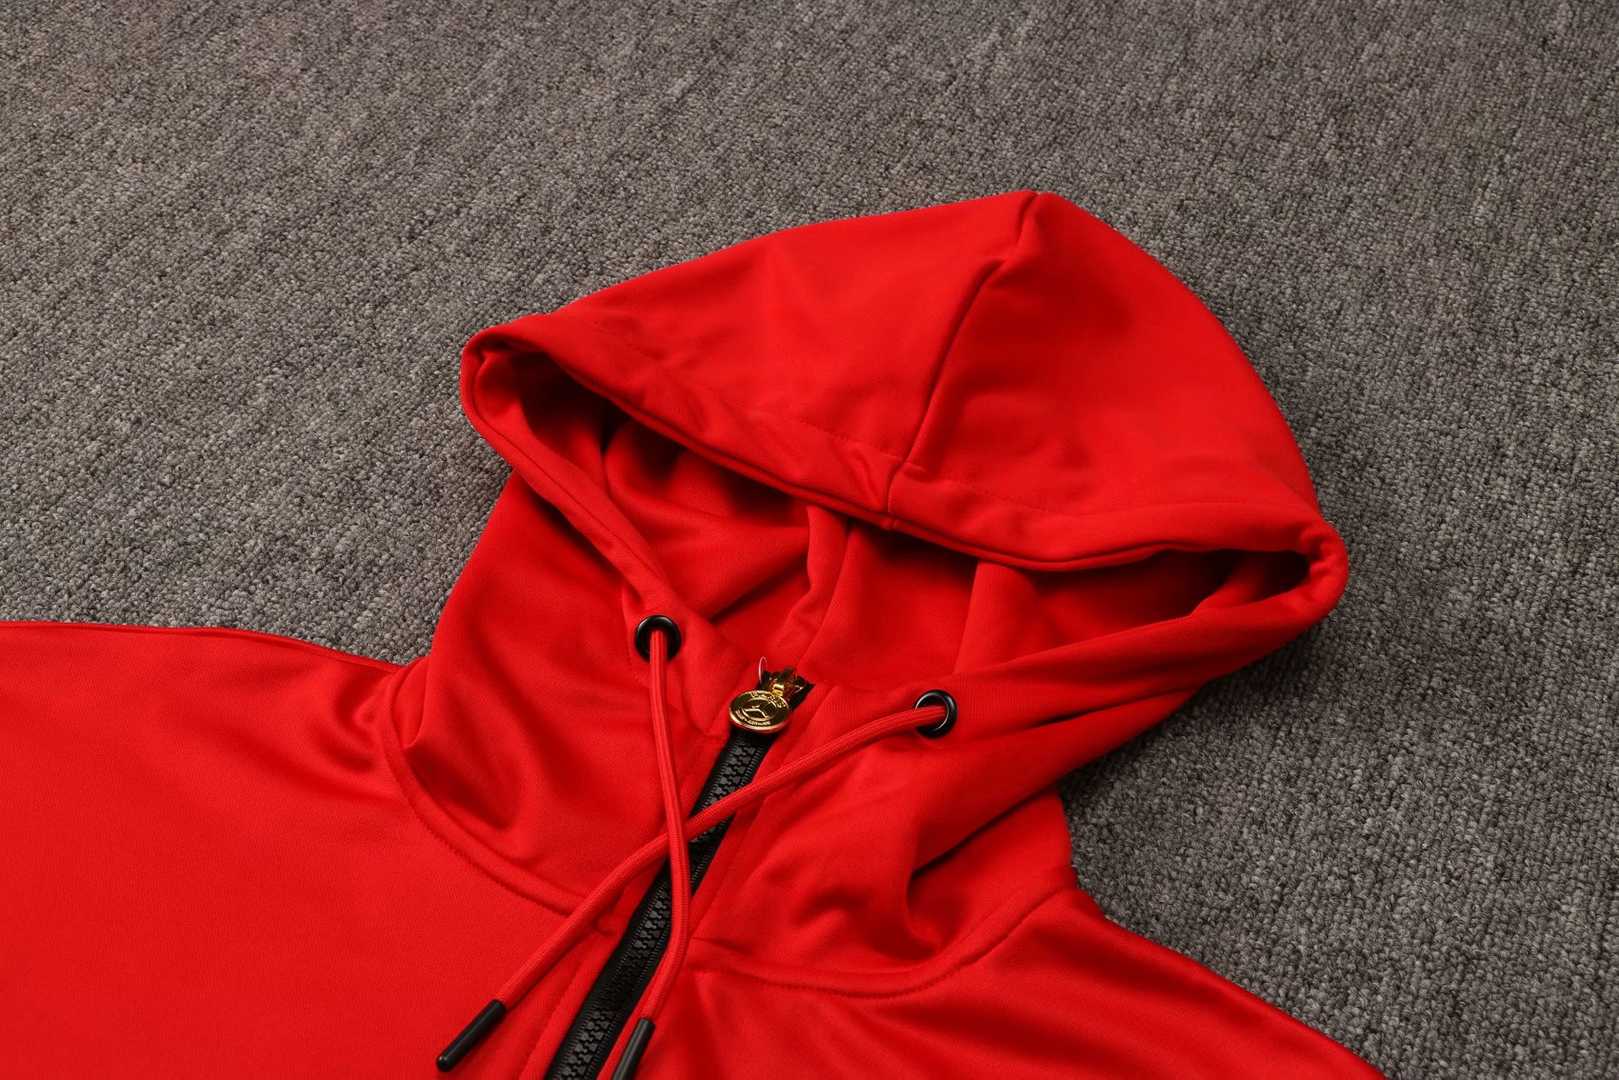 21/22 PSG x Jordan Hoodie Red Soccer Training Suit (Jacket + Pants) Men's